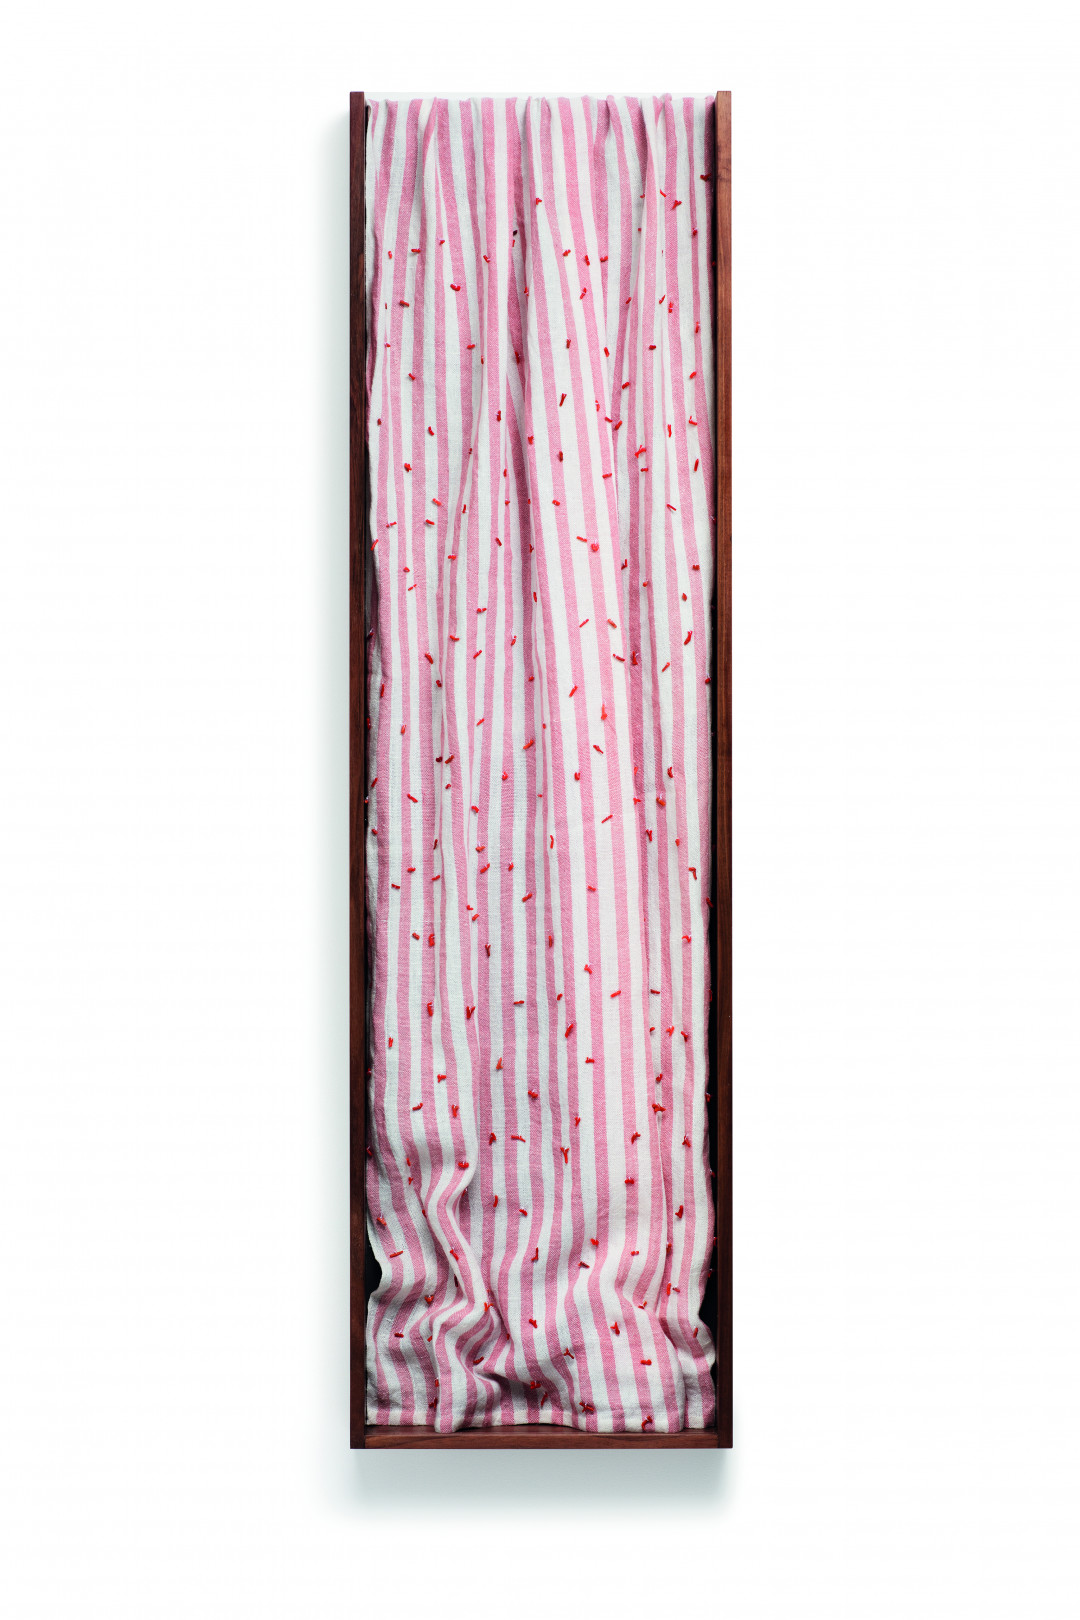 Anne Low, Canadá ‘An Ambitious Pagan I’, rubia roja desteñida tejida a mano en lino color coral, nogal negro, 119 x 22.6 x 0.75 cm.  2015